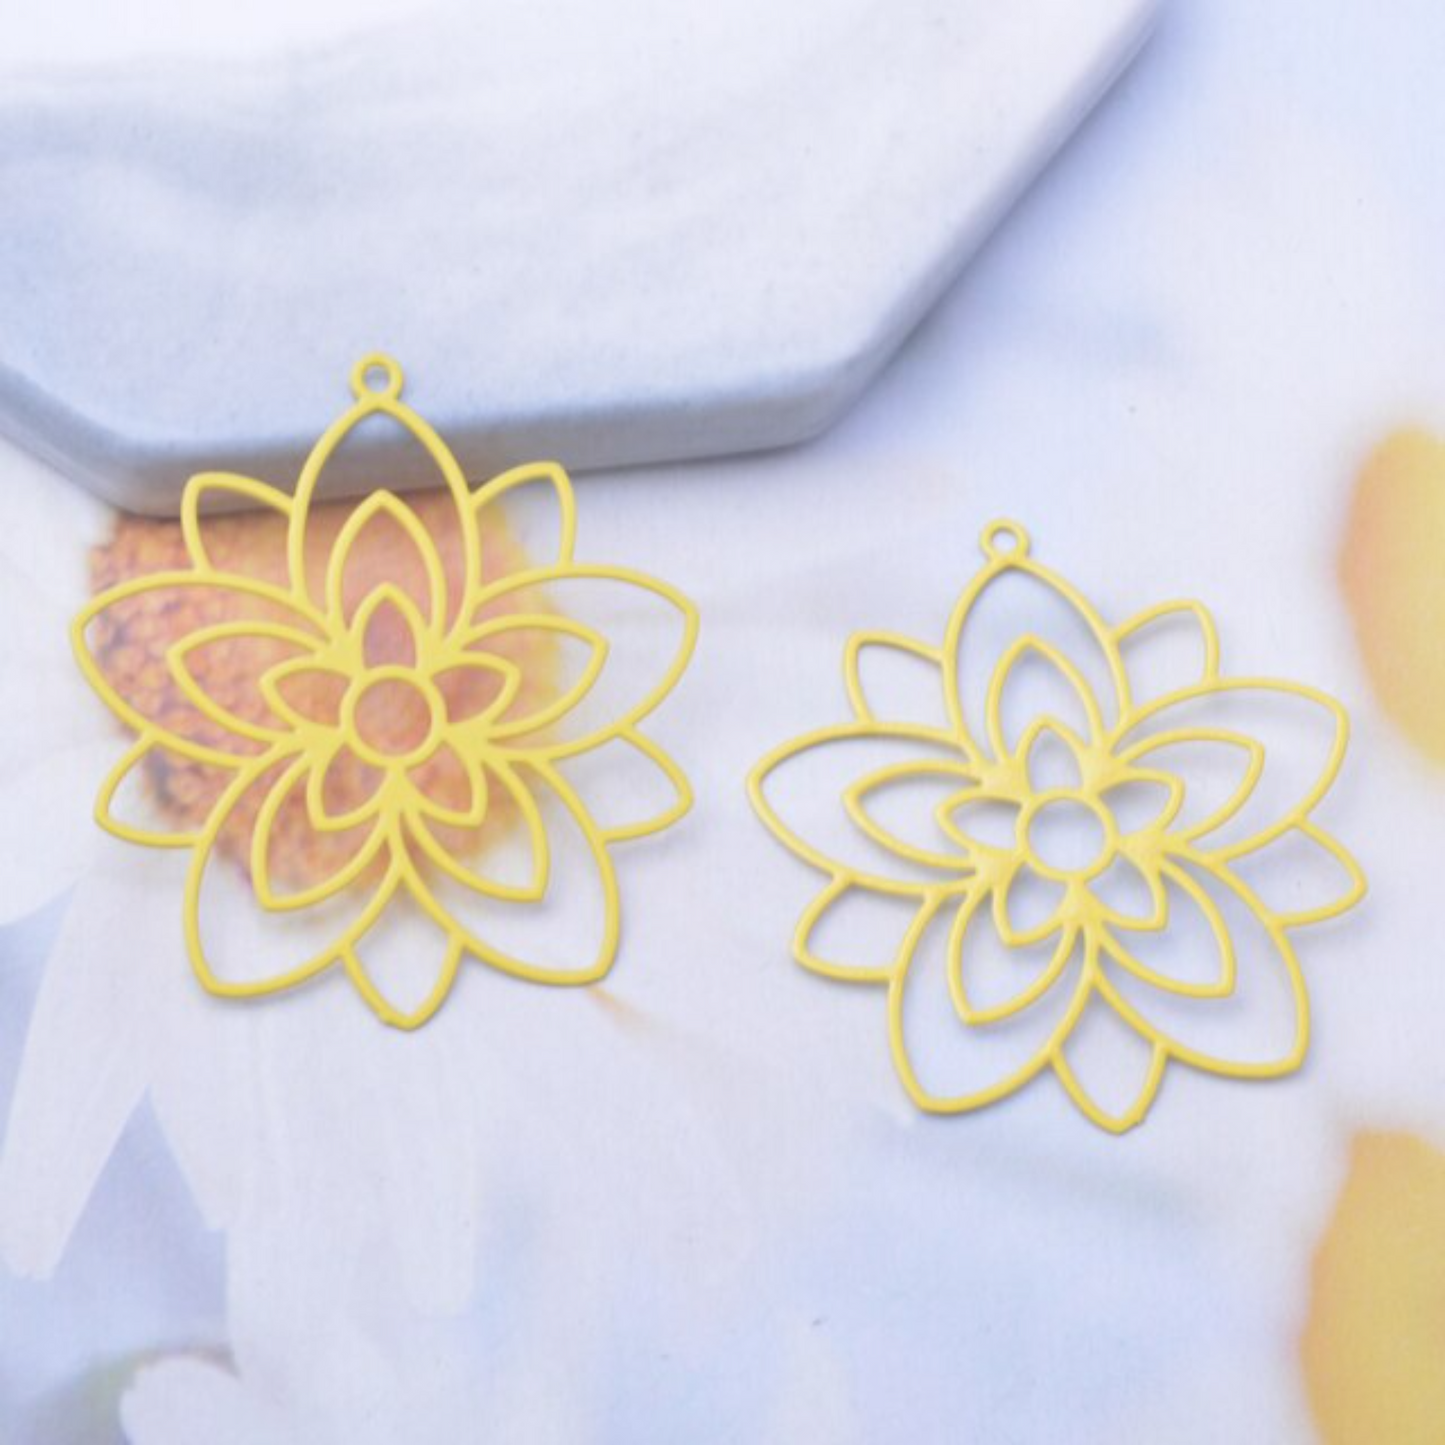 Floral Loop Filigree Earring Charm - 2ea (1 pair)